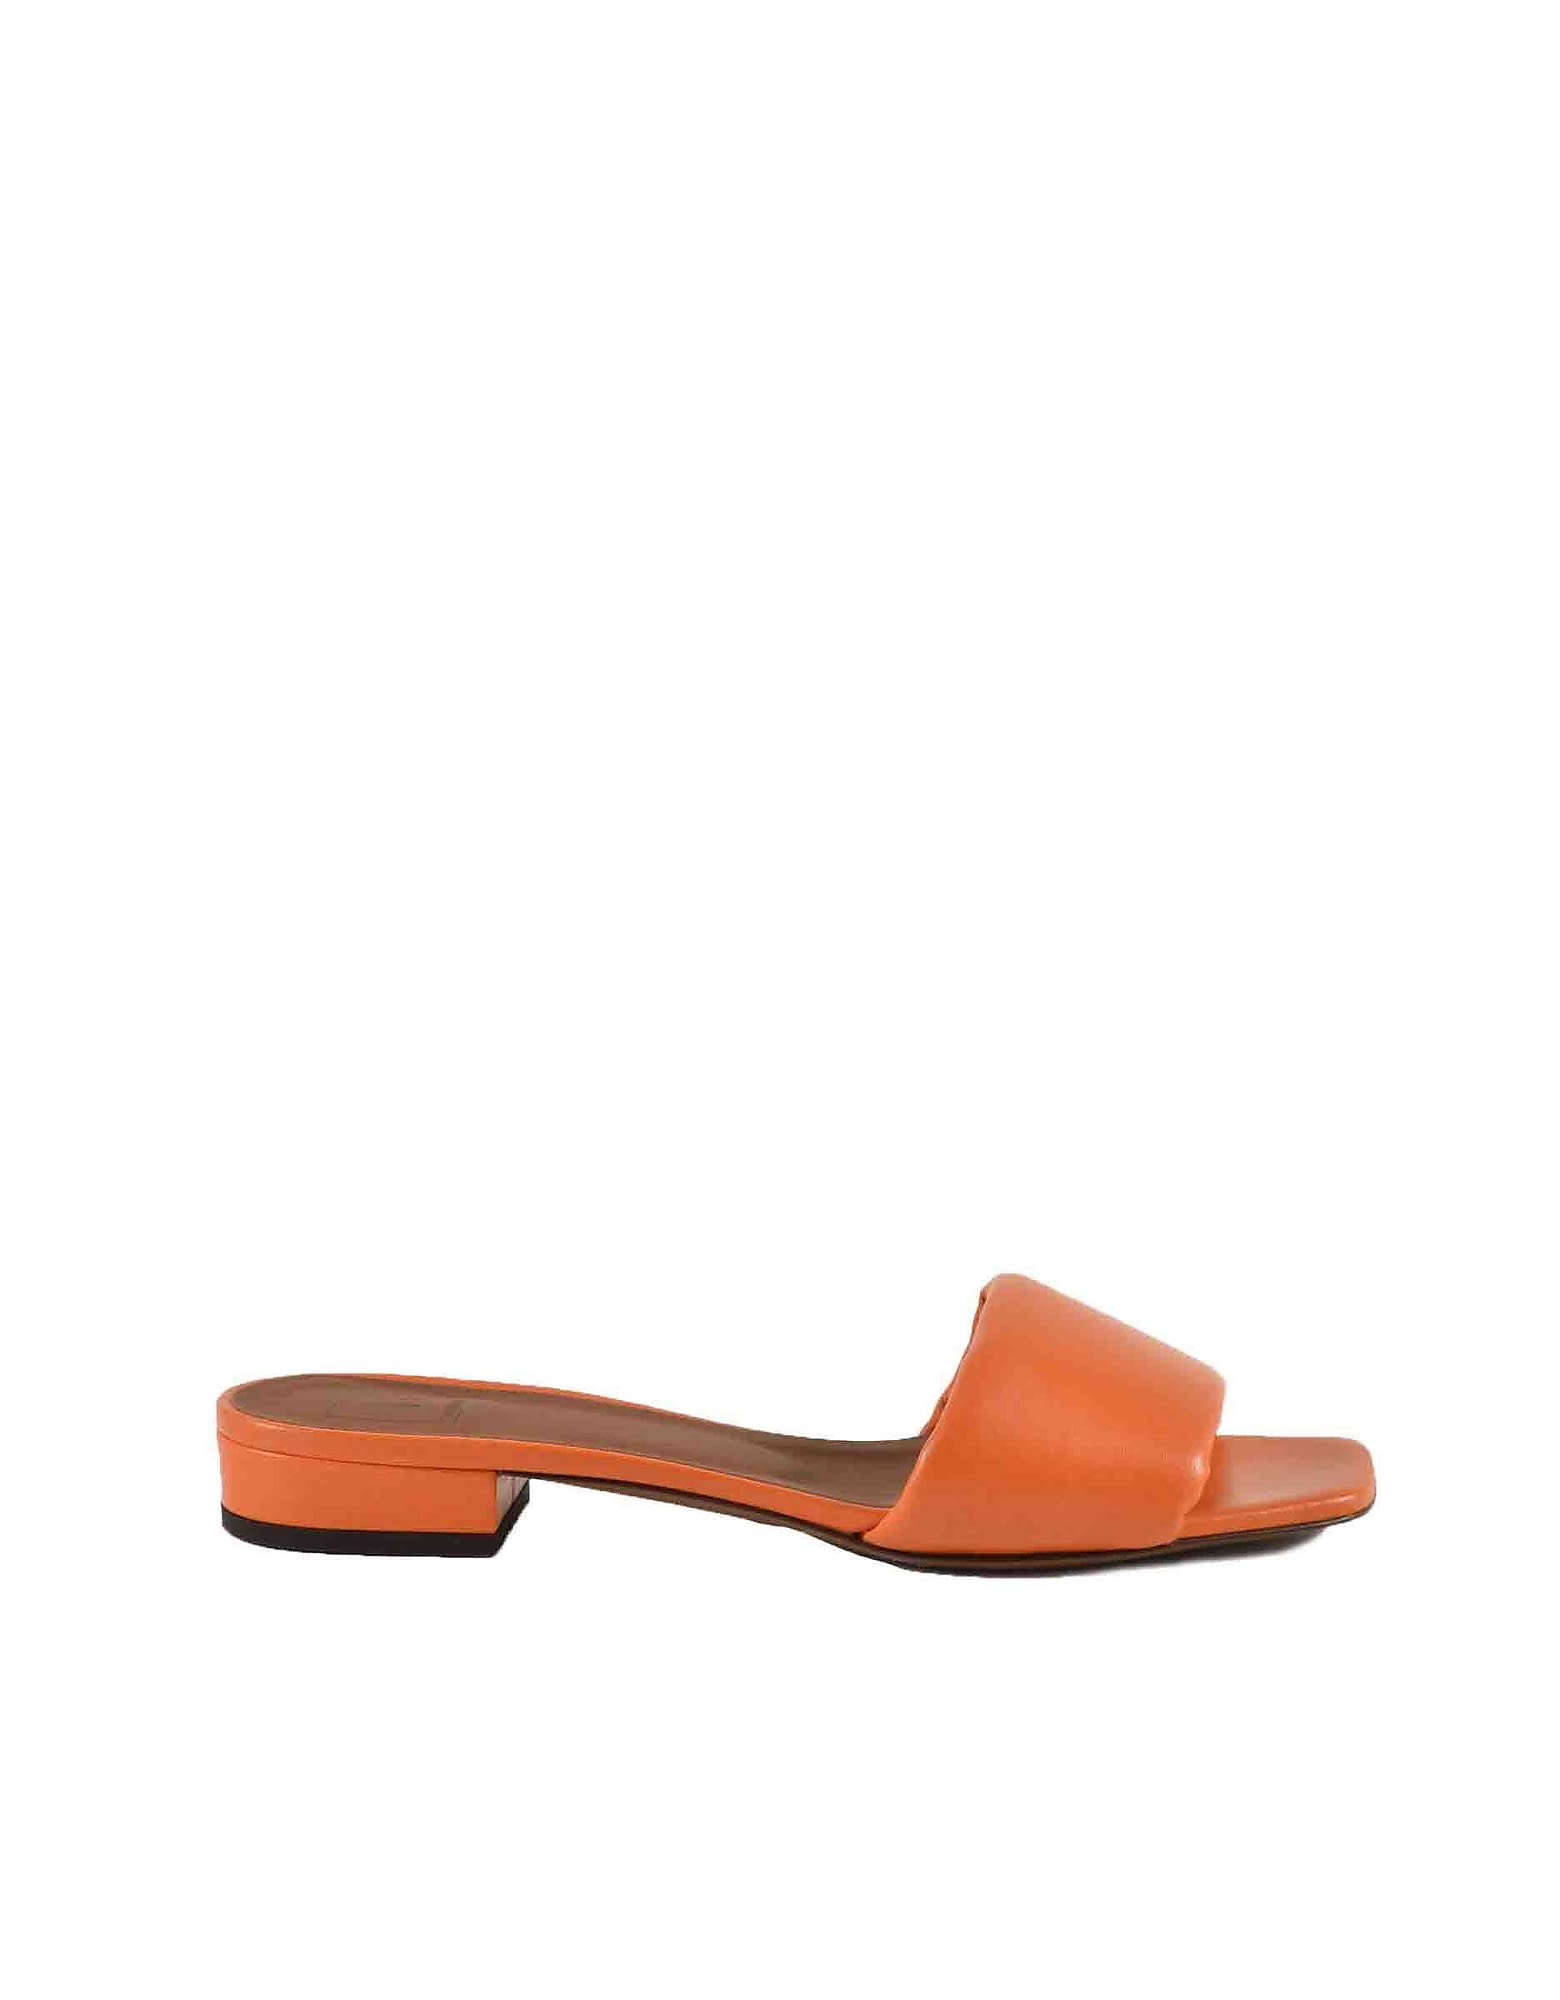 L'Autre Chose Womens Orange Sandals